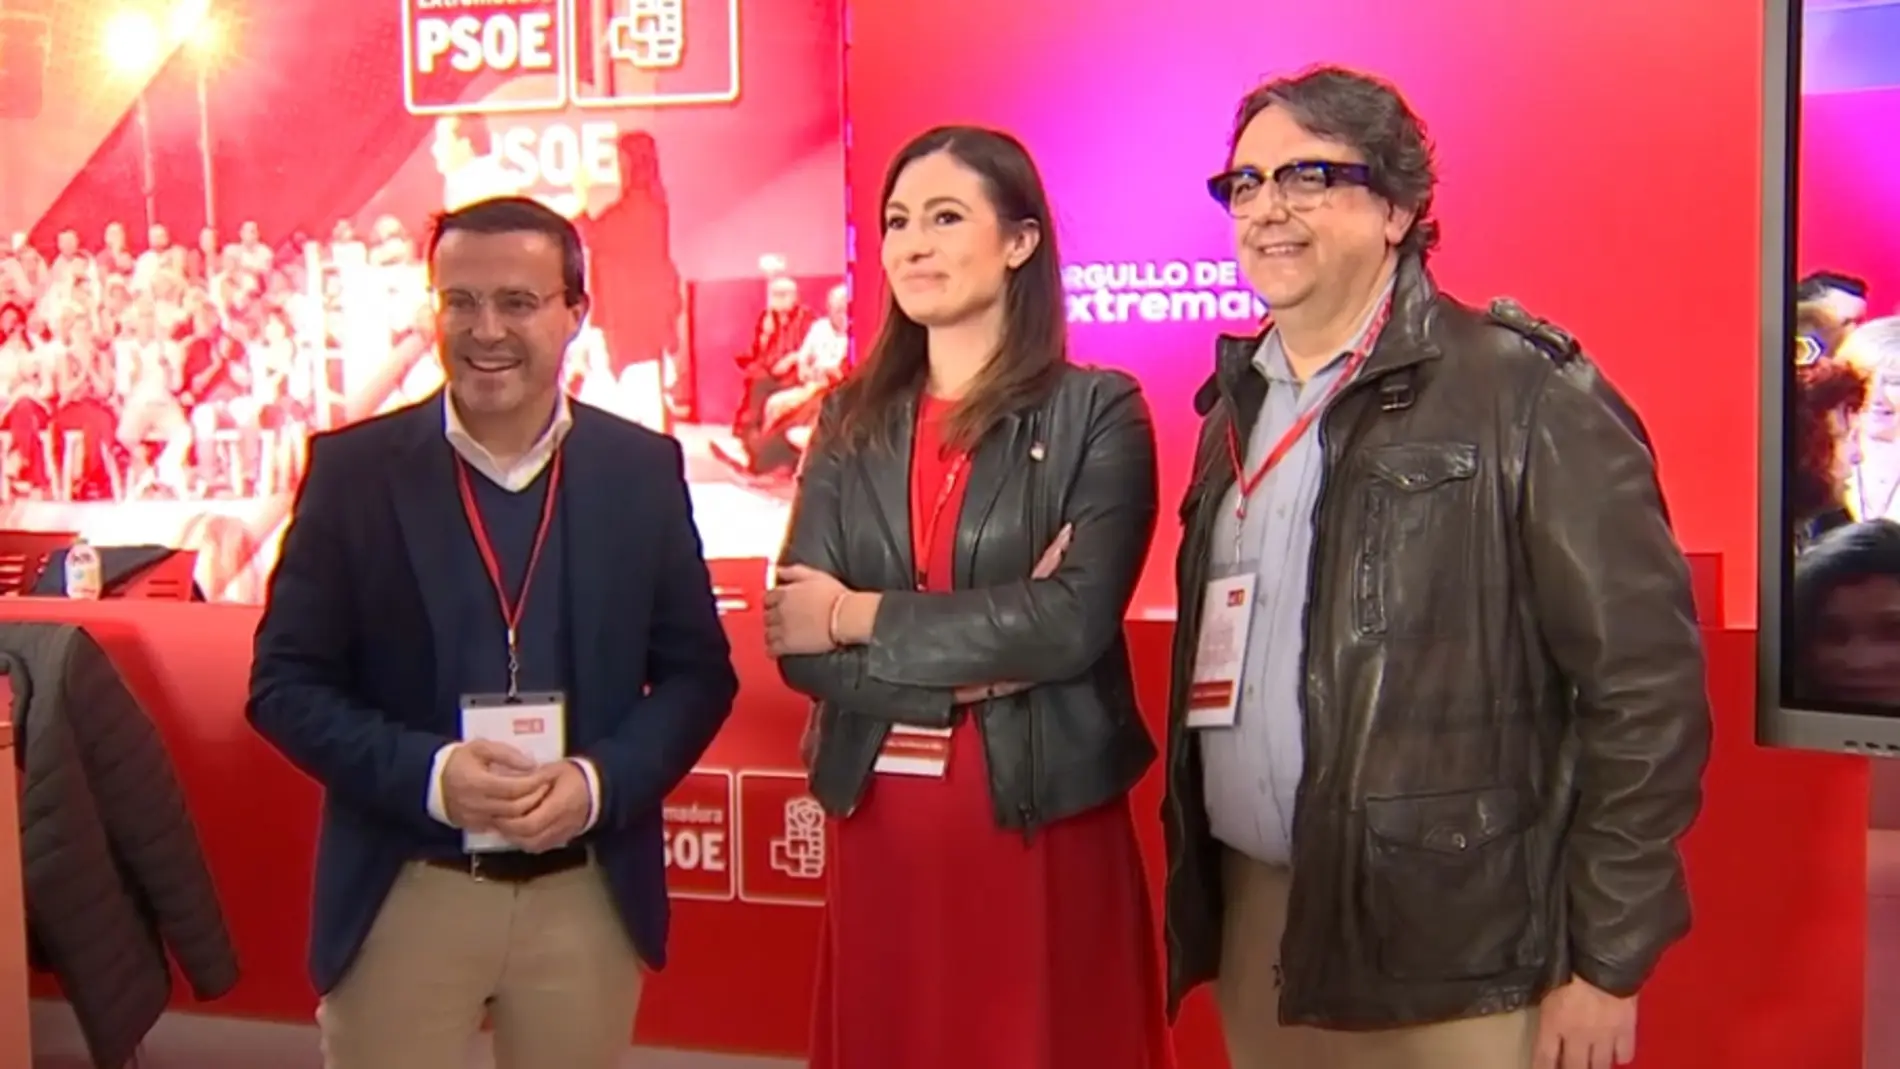 Gallardo, Garlito y Vergeles: tres nombres en la carrera para suceder a Guillermo Fernández Vara al frente del PSOE extremeño